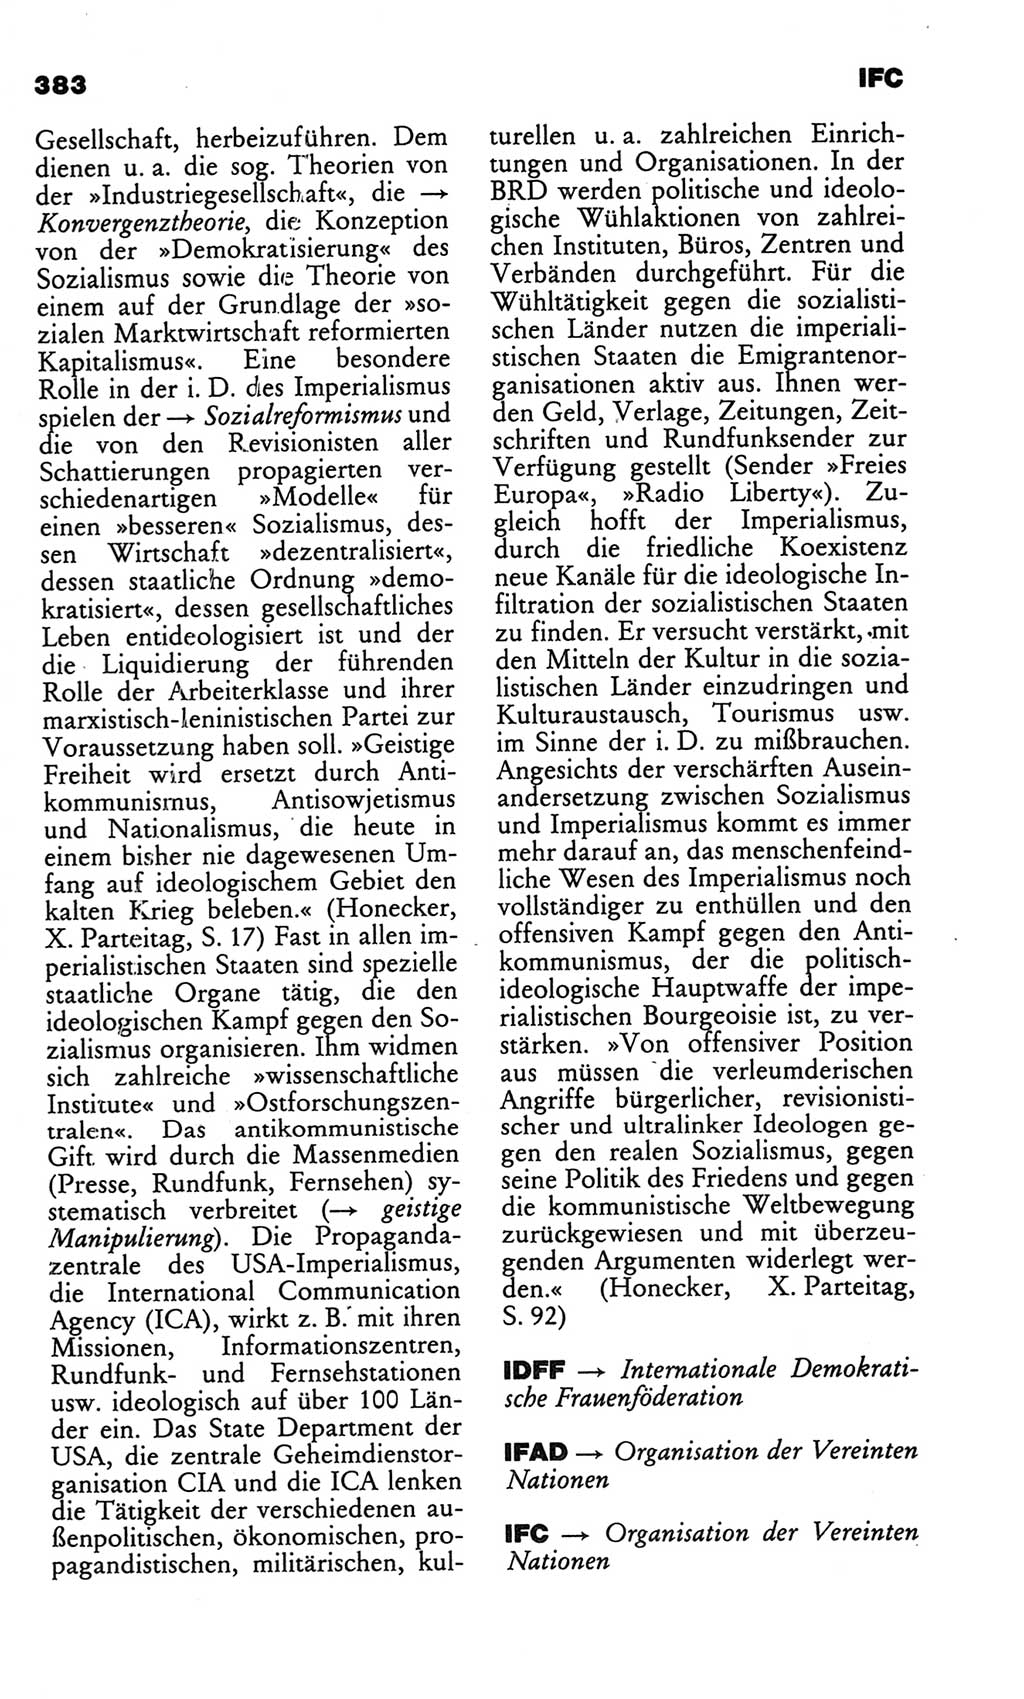 Kleines politisches Wörterbuch [Deutsche Demokratische Republik (DDR)] 1986, Seite 383 (Kl. pol. Wb. DDR 1986, S. 383)